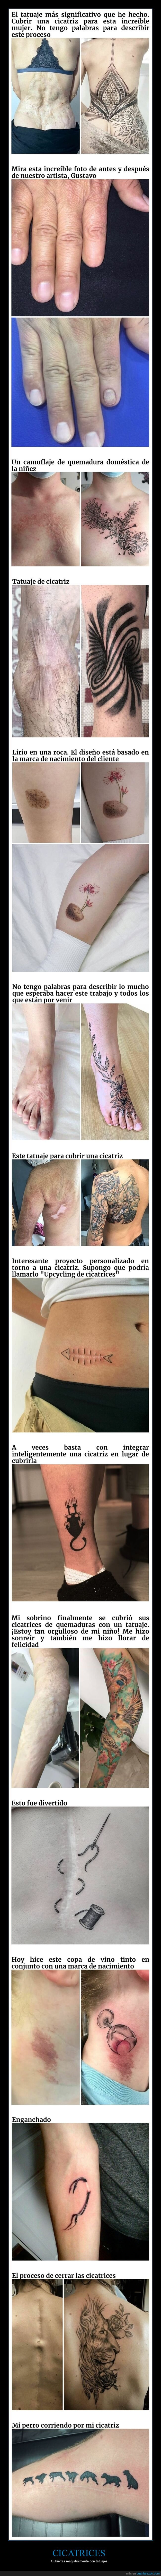 cicatrices,tatuajes